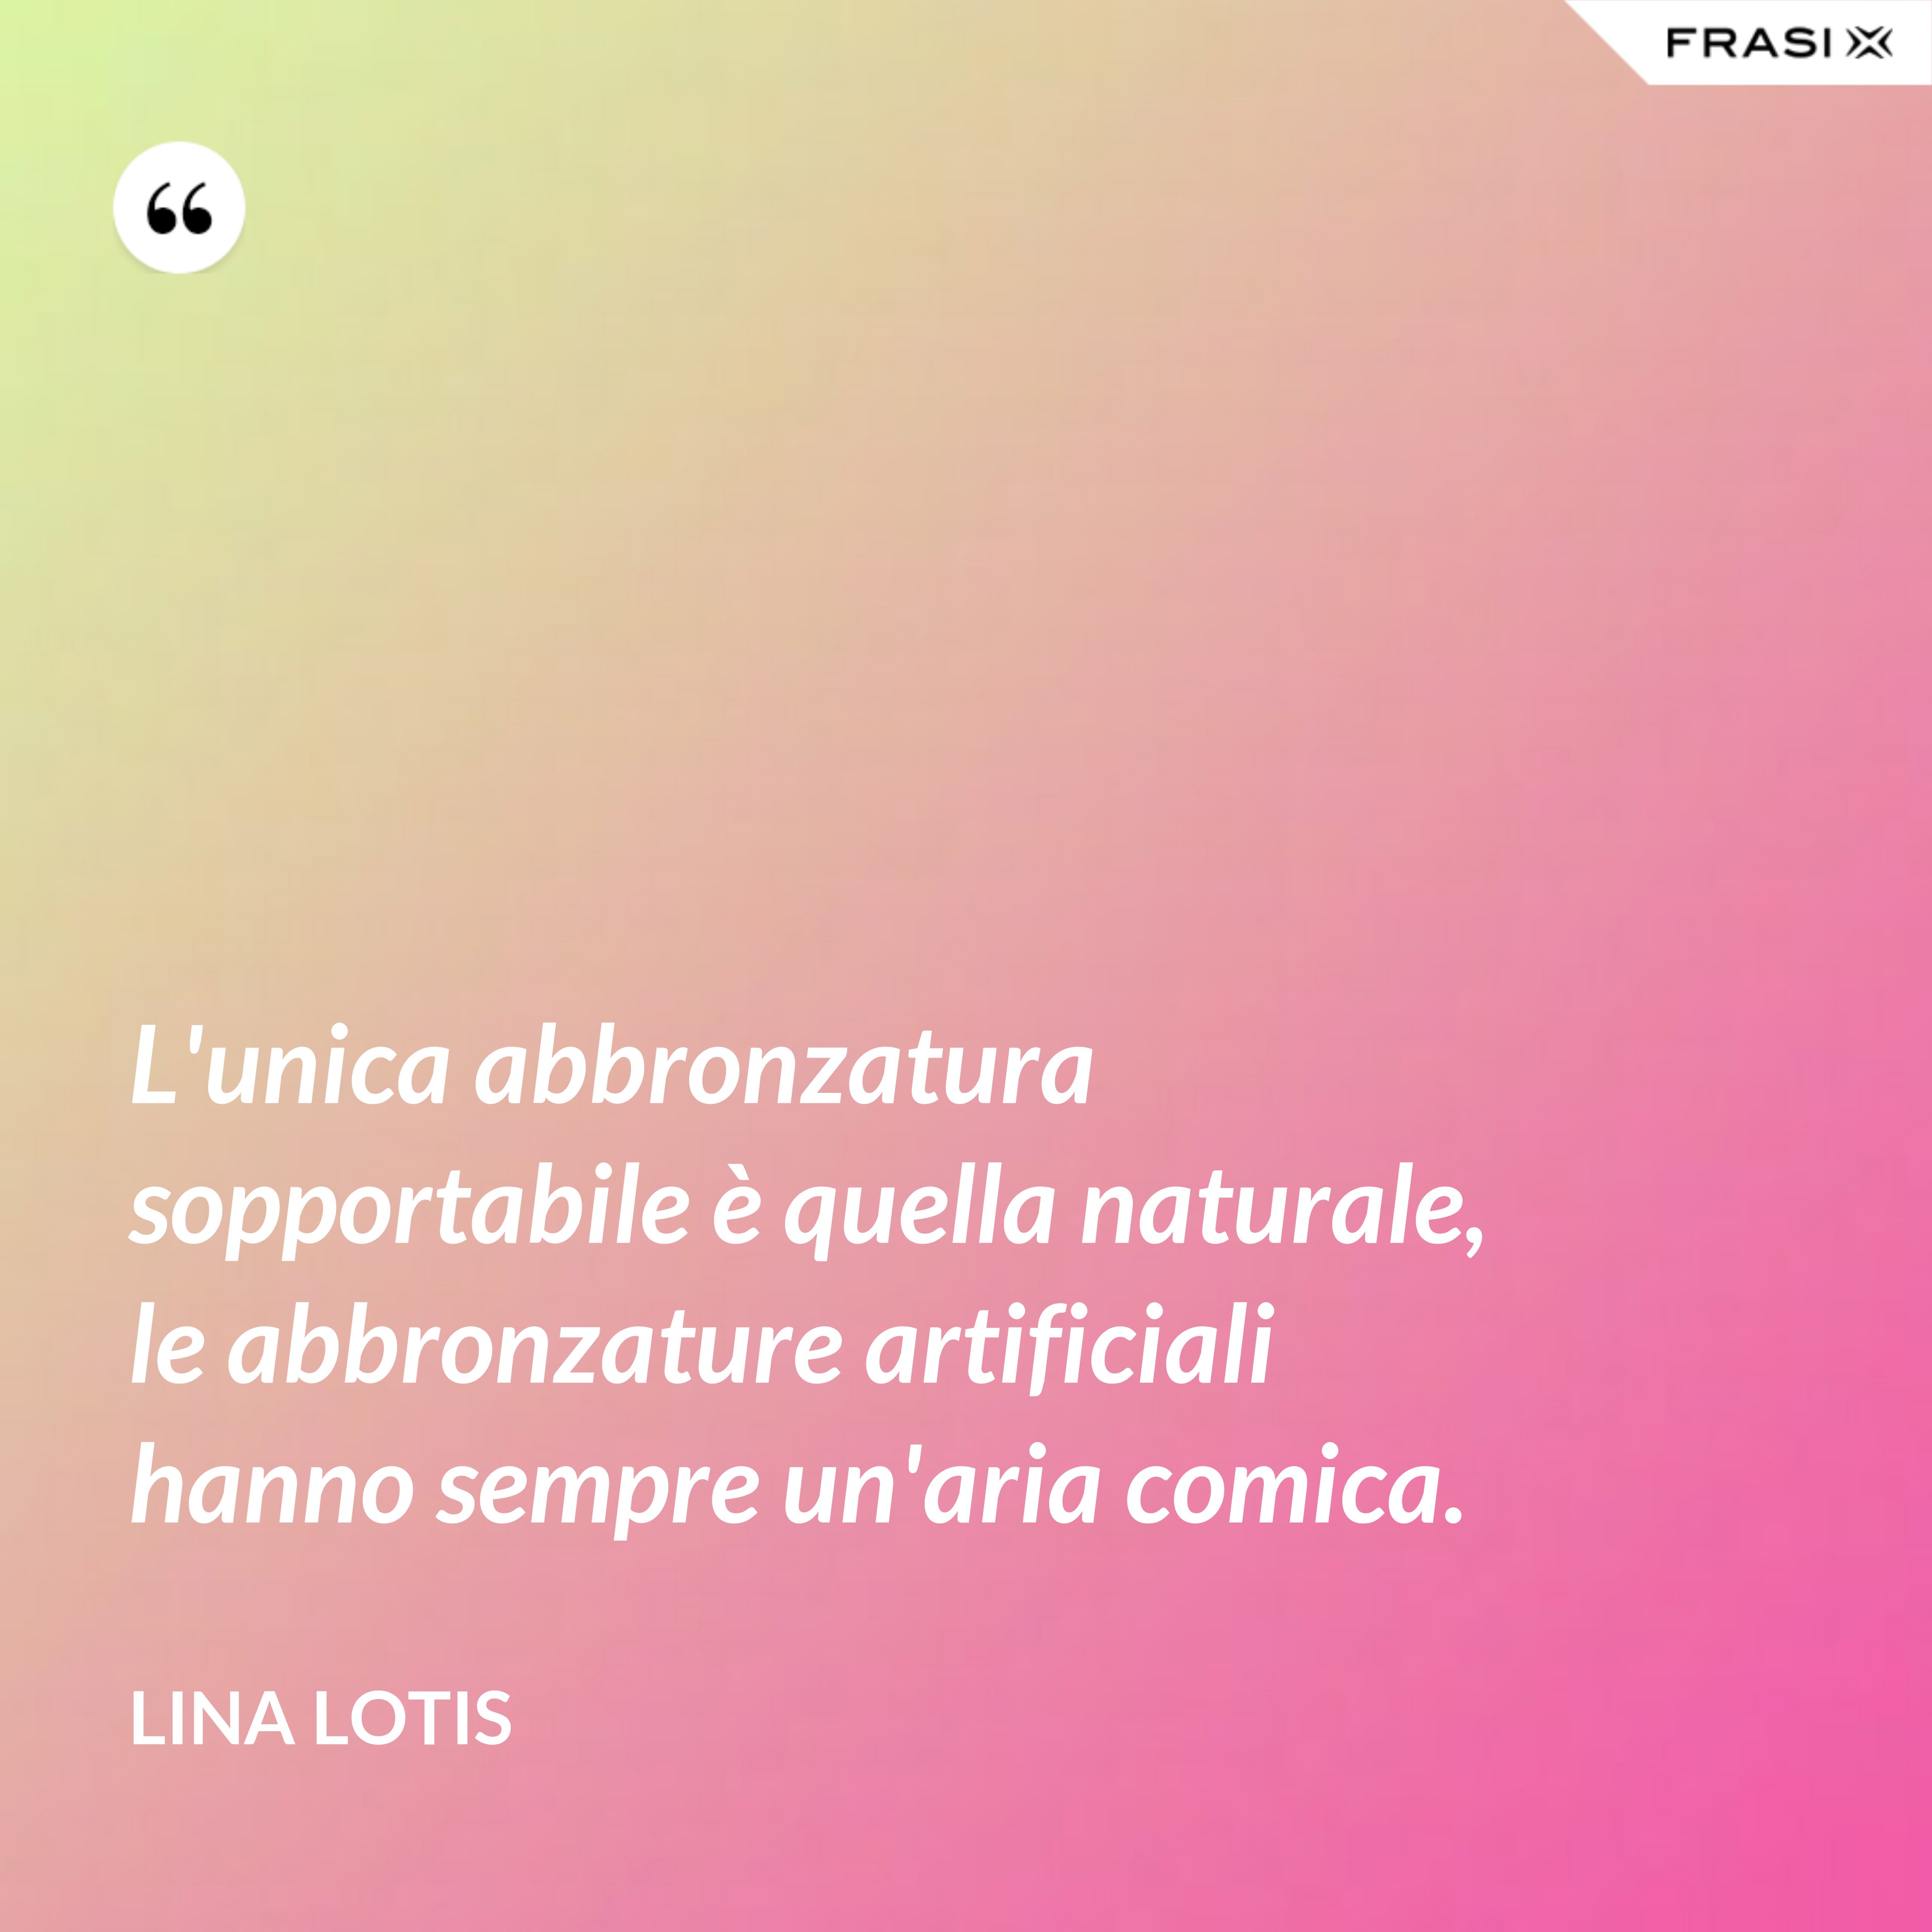 L'unica abbronzatura sopportabile è quella naturale, le abbronzature artificiali hanno sempre un'aria comica. - Lina Lotis